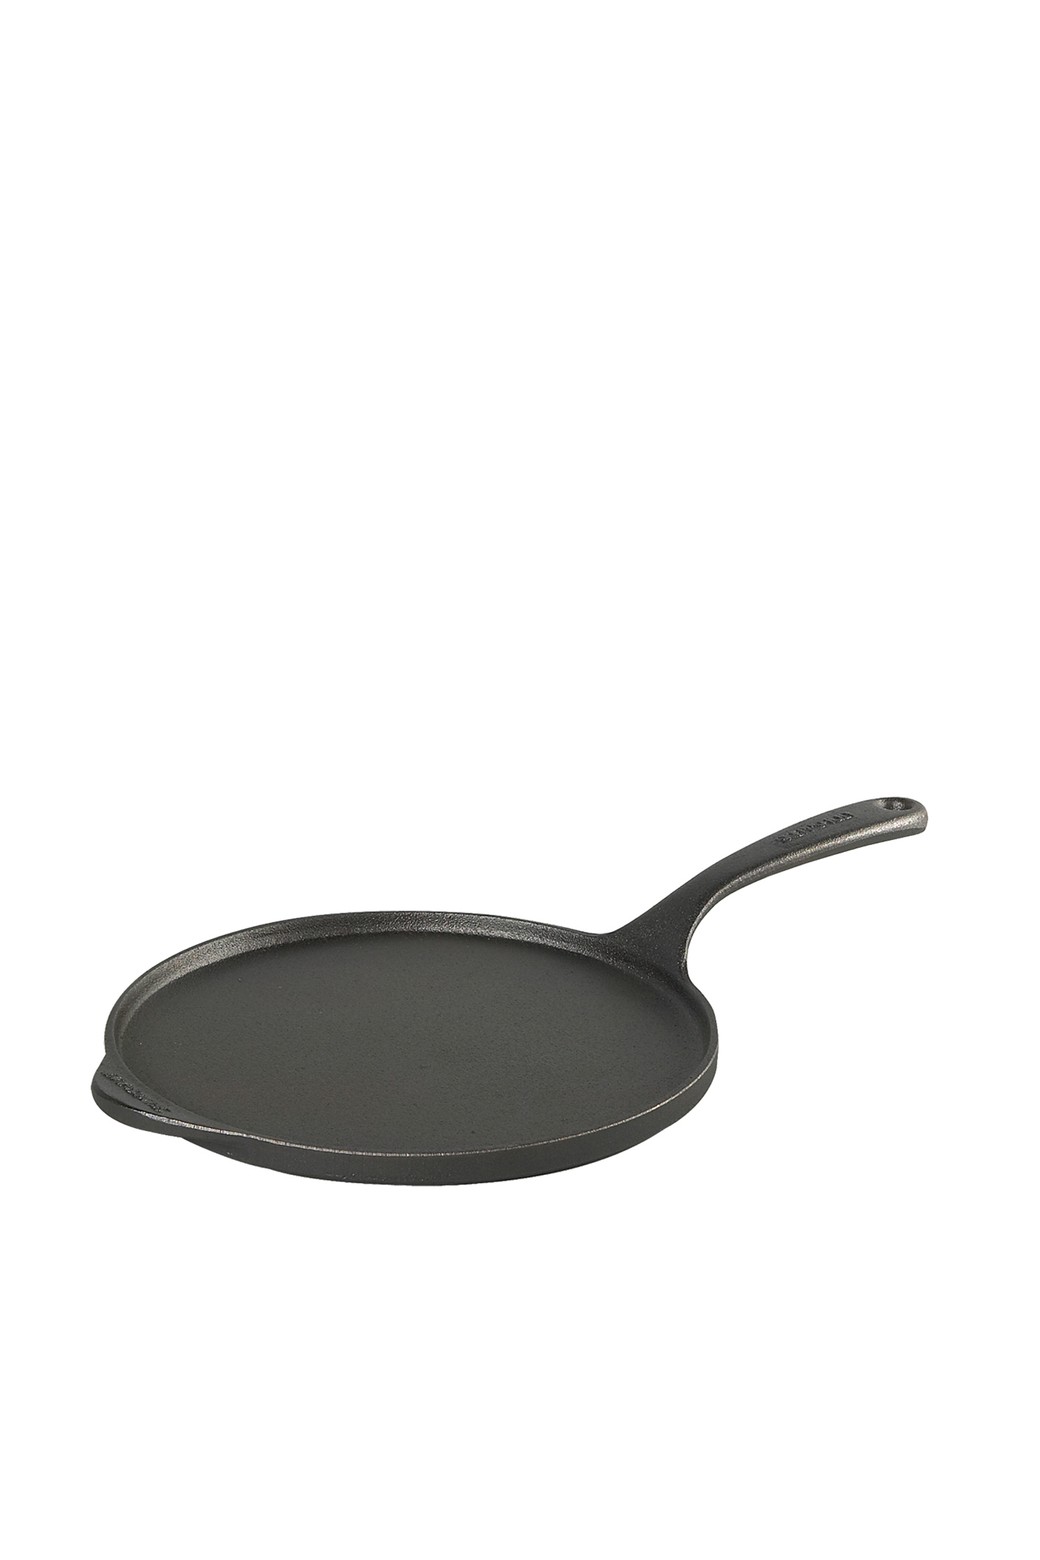 Skeppshult Original cast iron pancake griddle 23 cm, 0031 